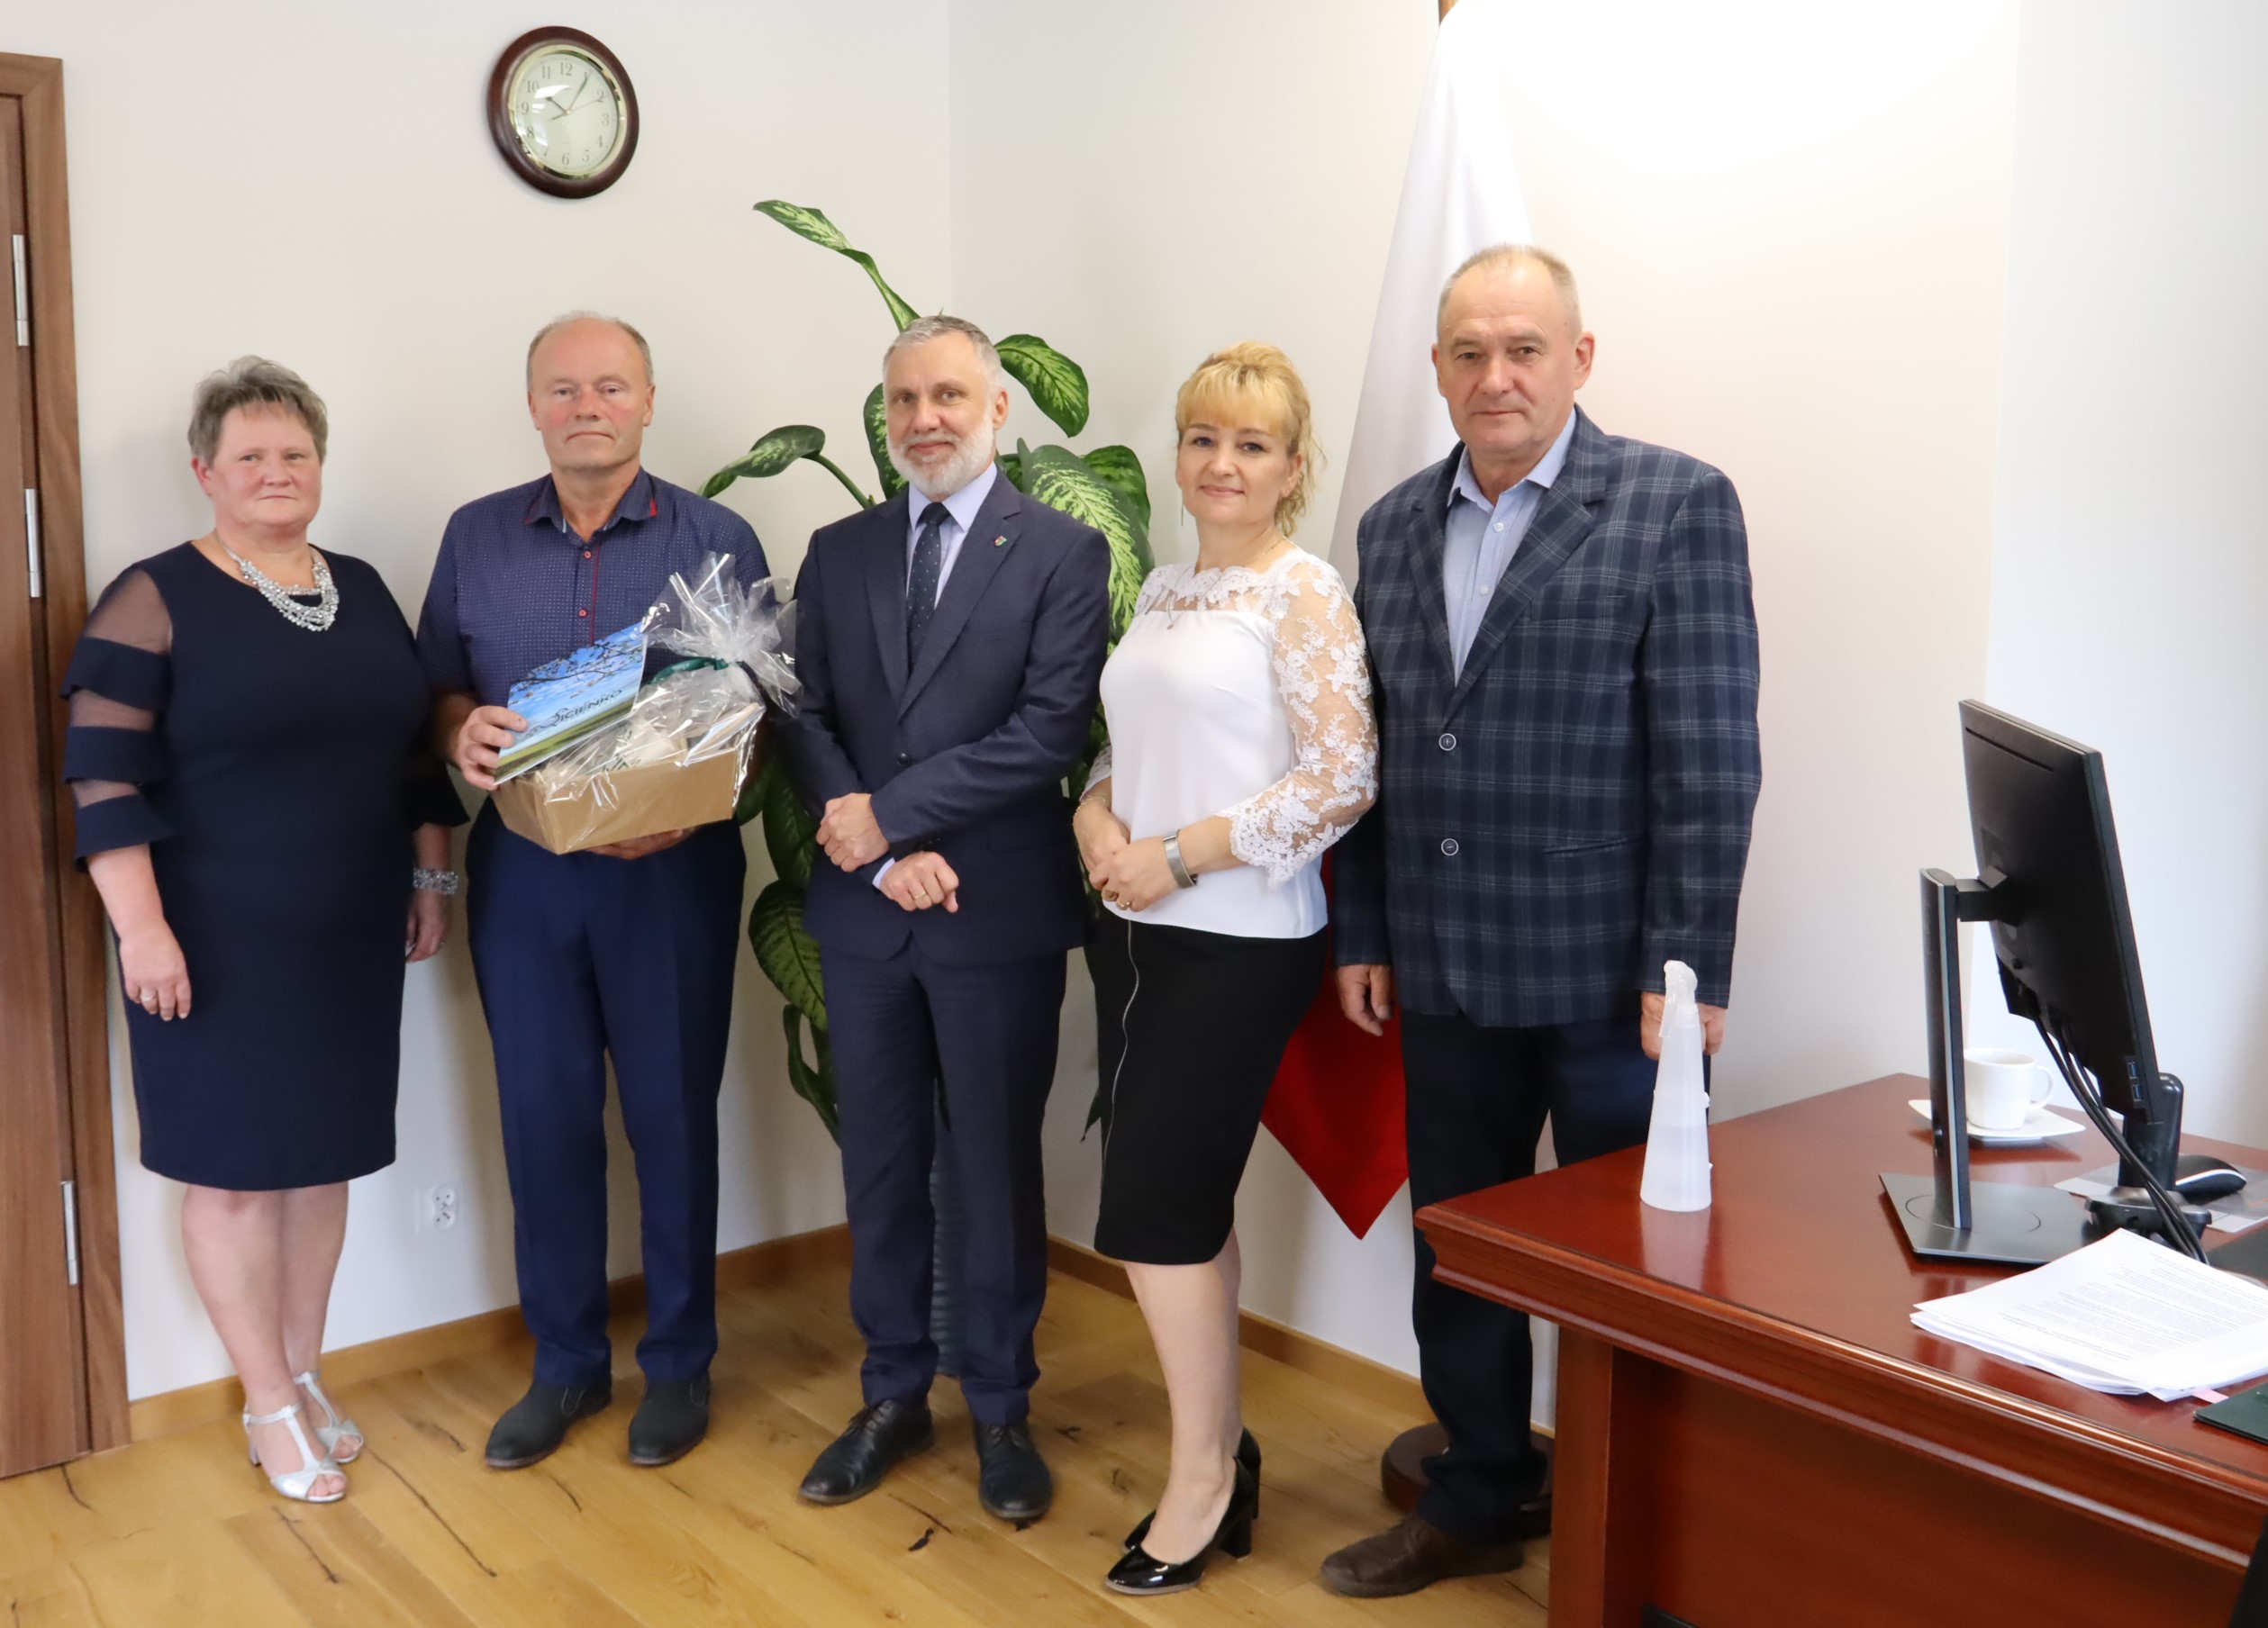 Gratulacje dla Pana Rafała Krasulaka za zdobycie tytułu laureata VI edycji konkursu „Agricola – Syn Ziemi” 2021.